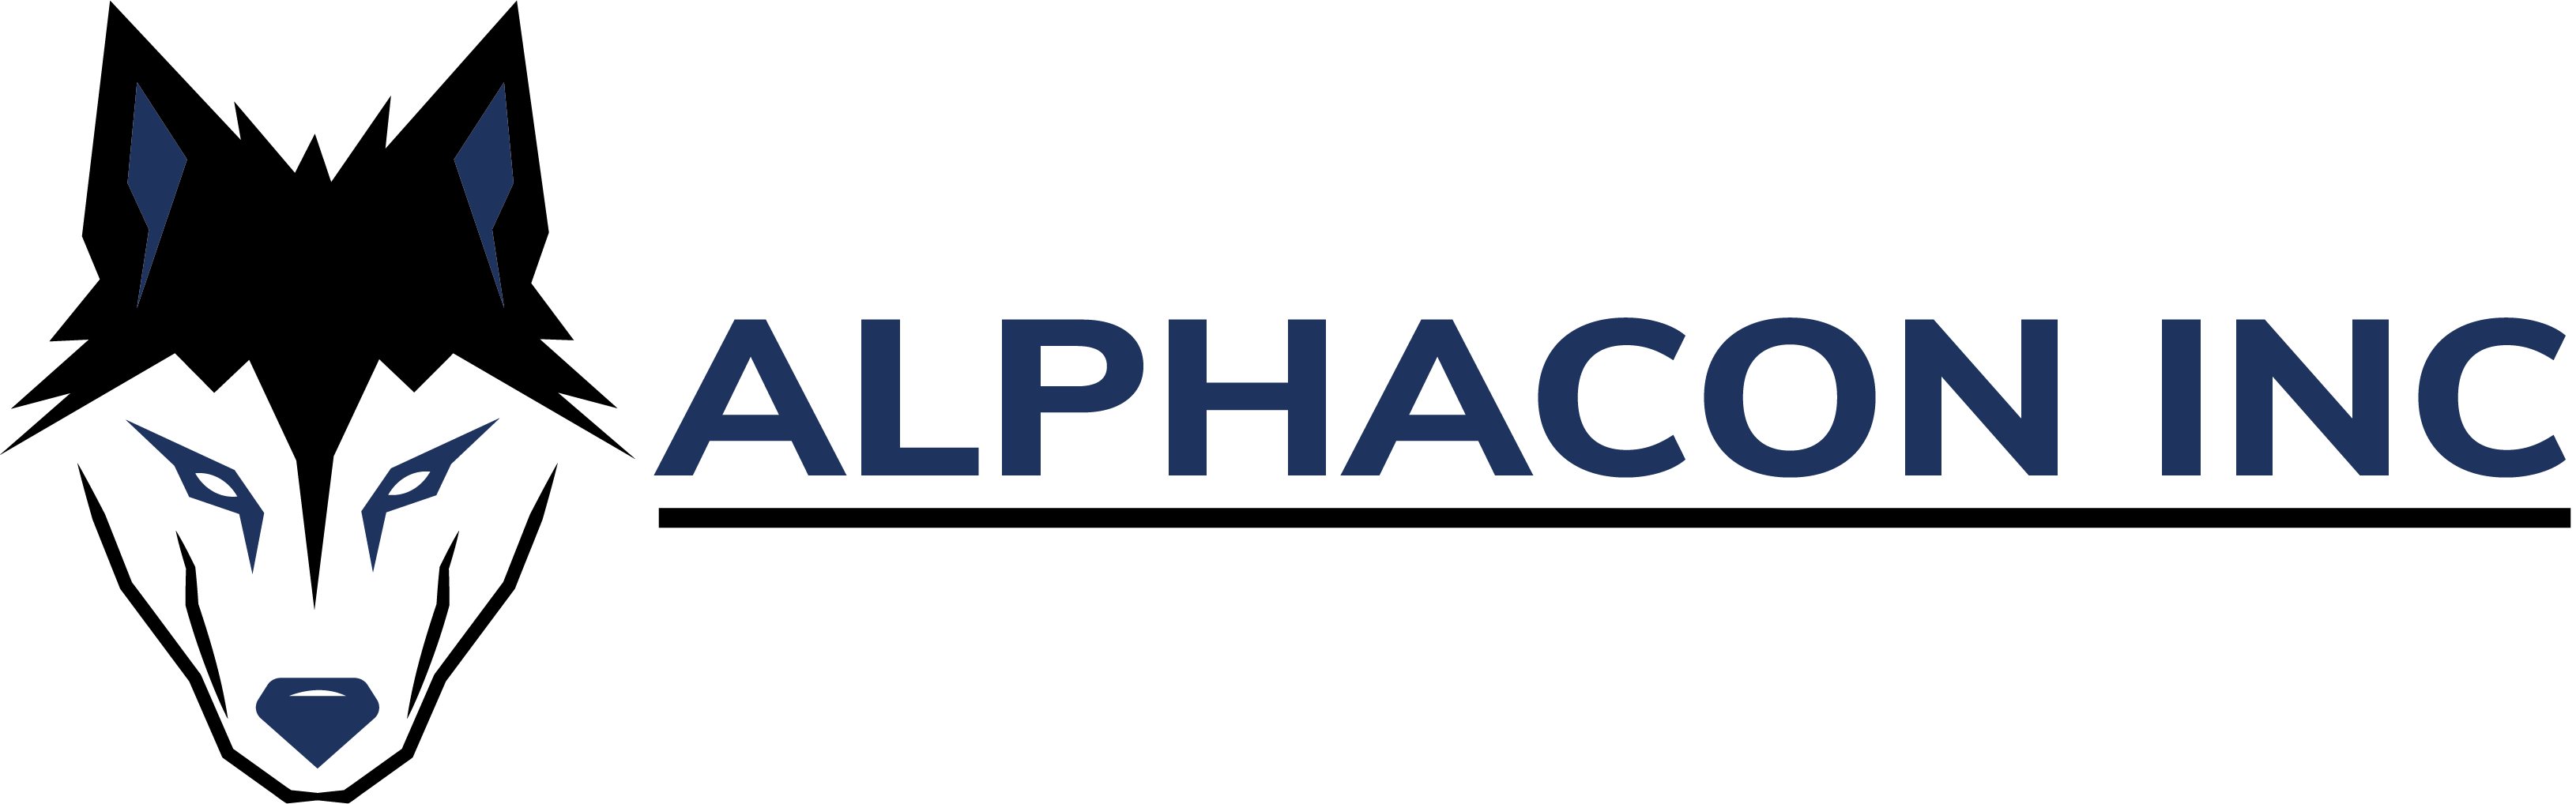 Alphacon Inc